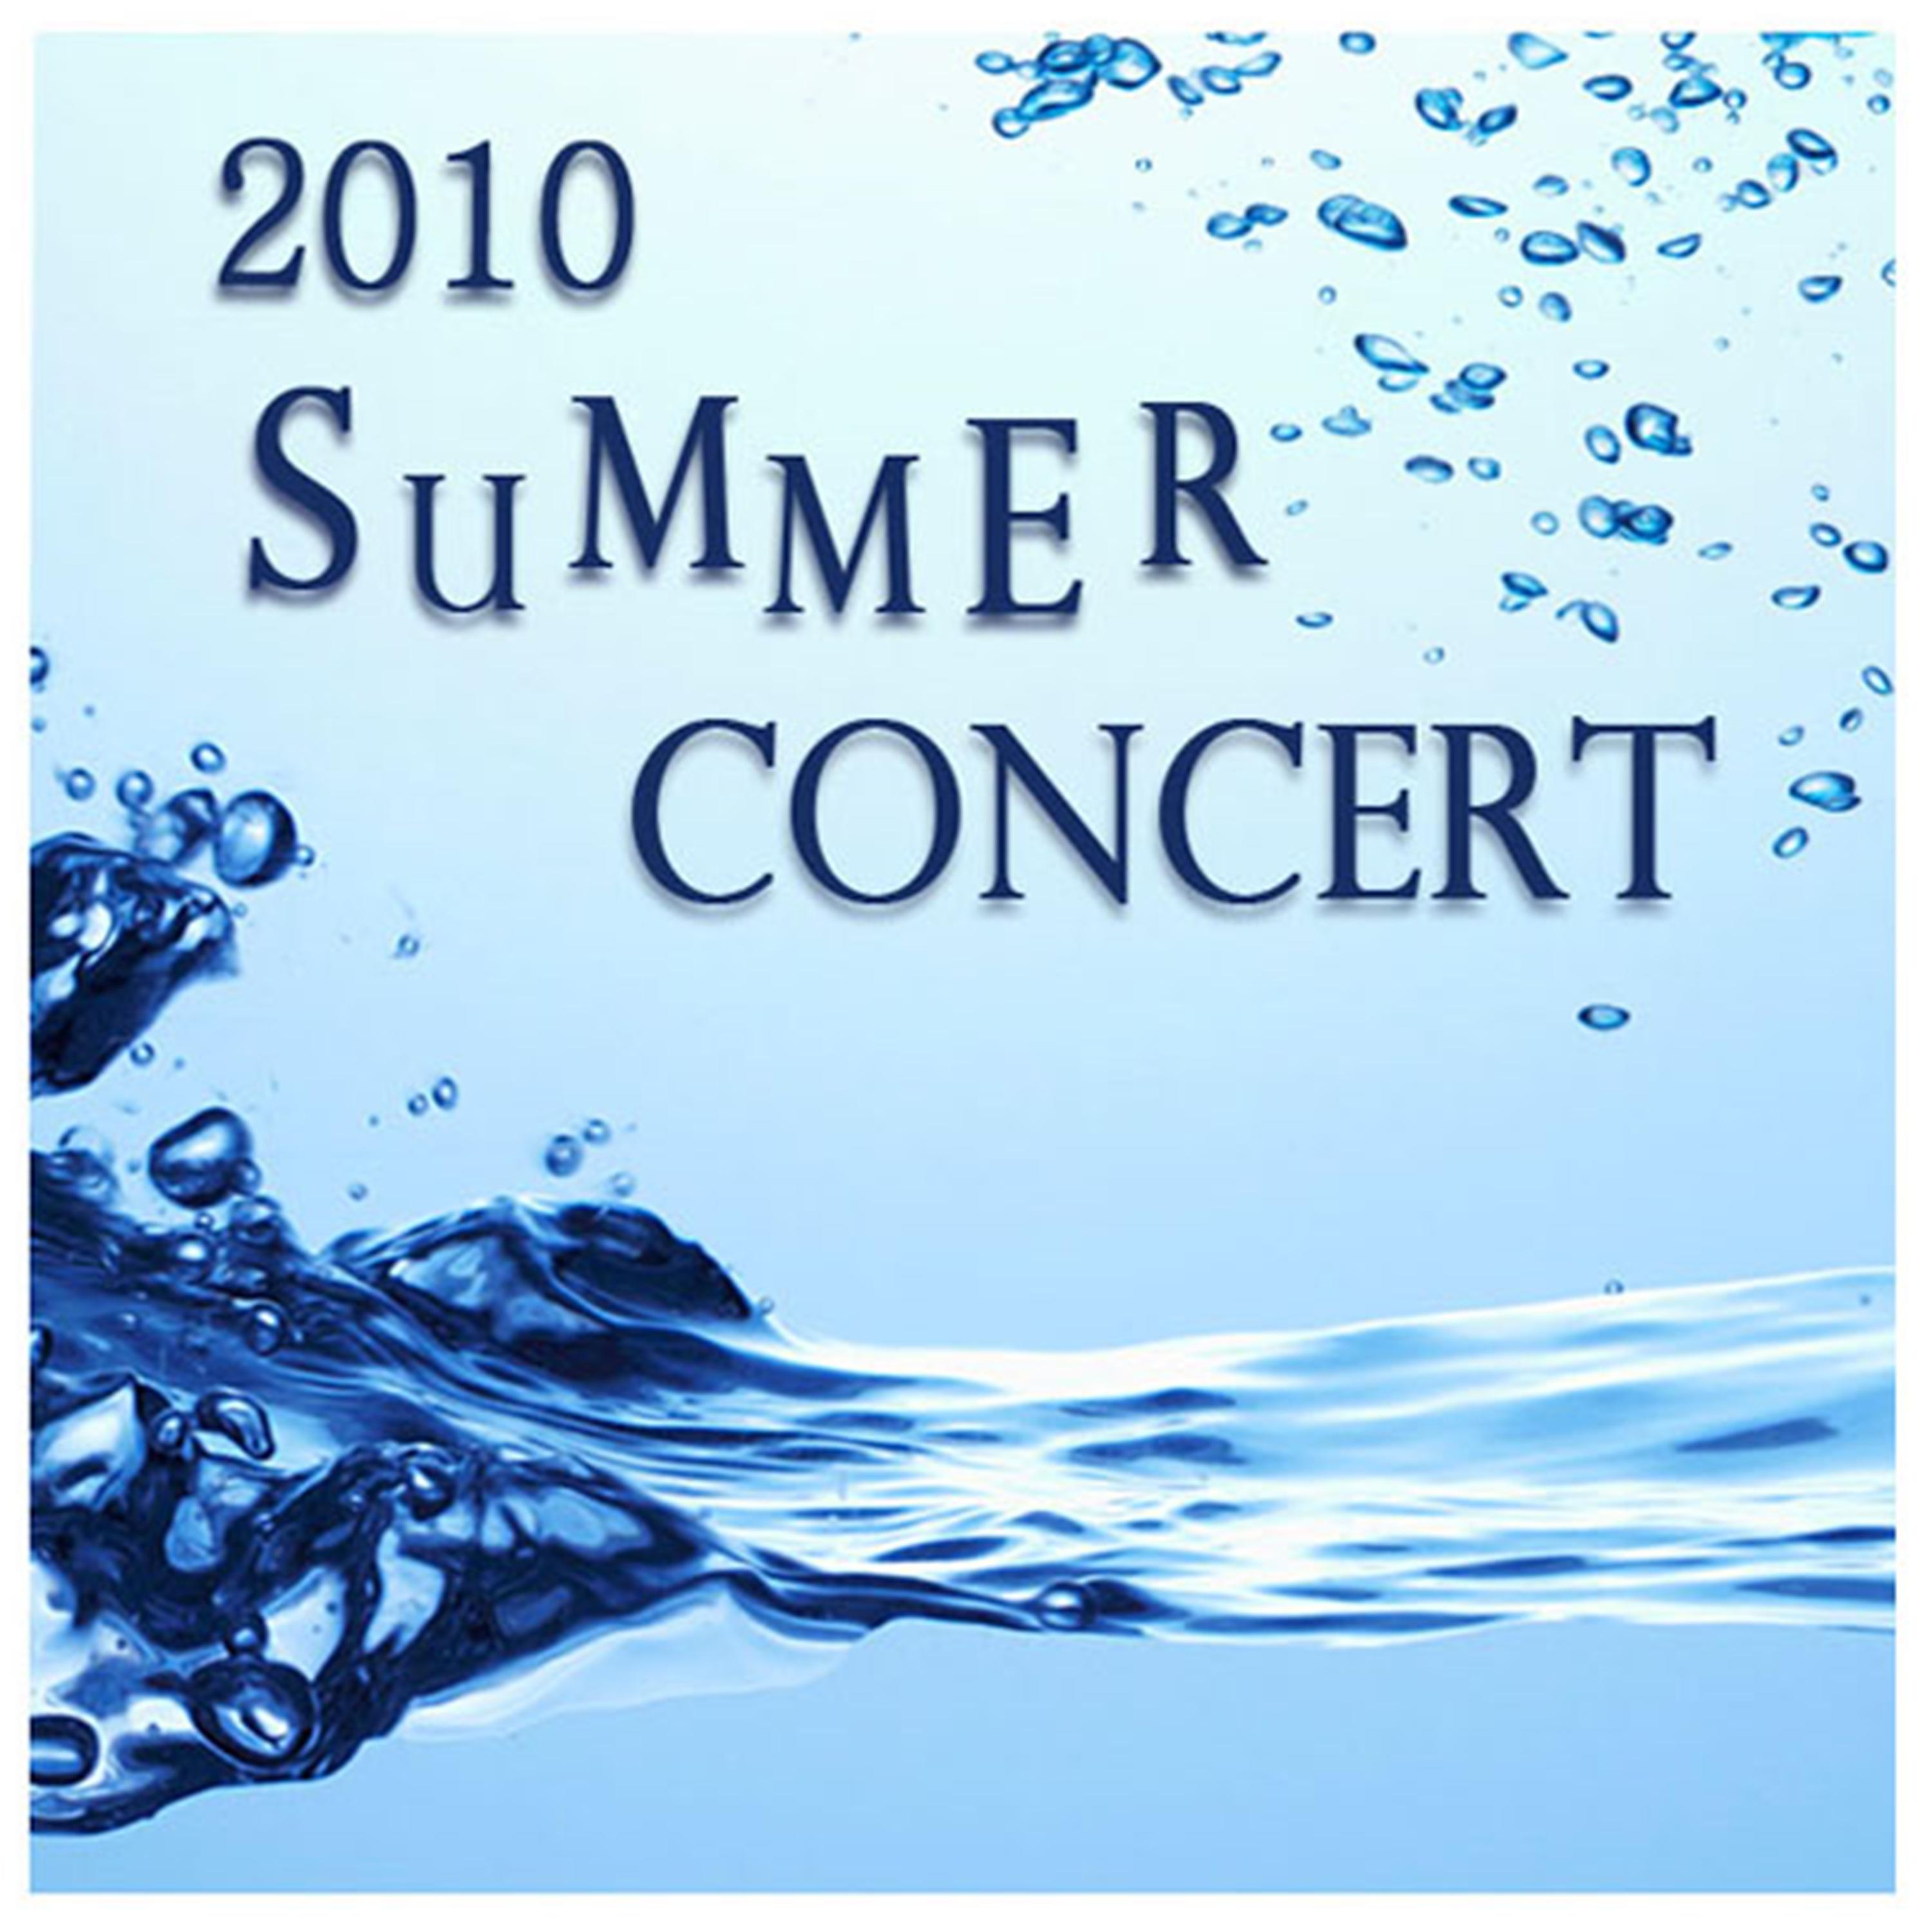 2010 Summer Concert